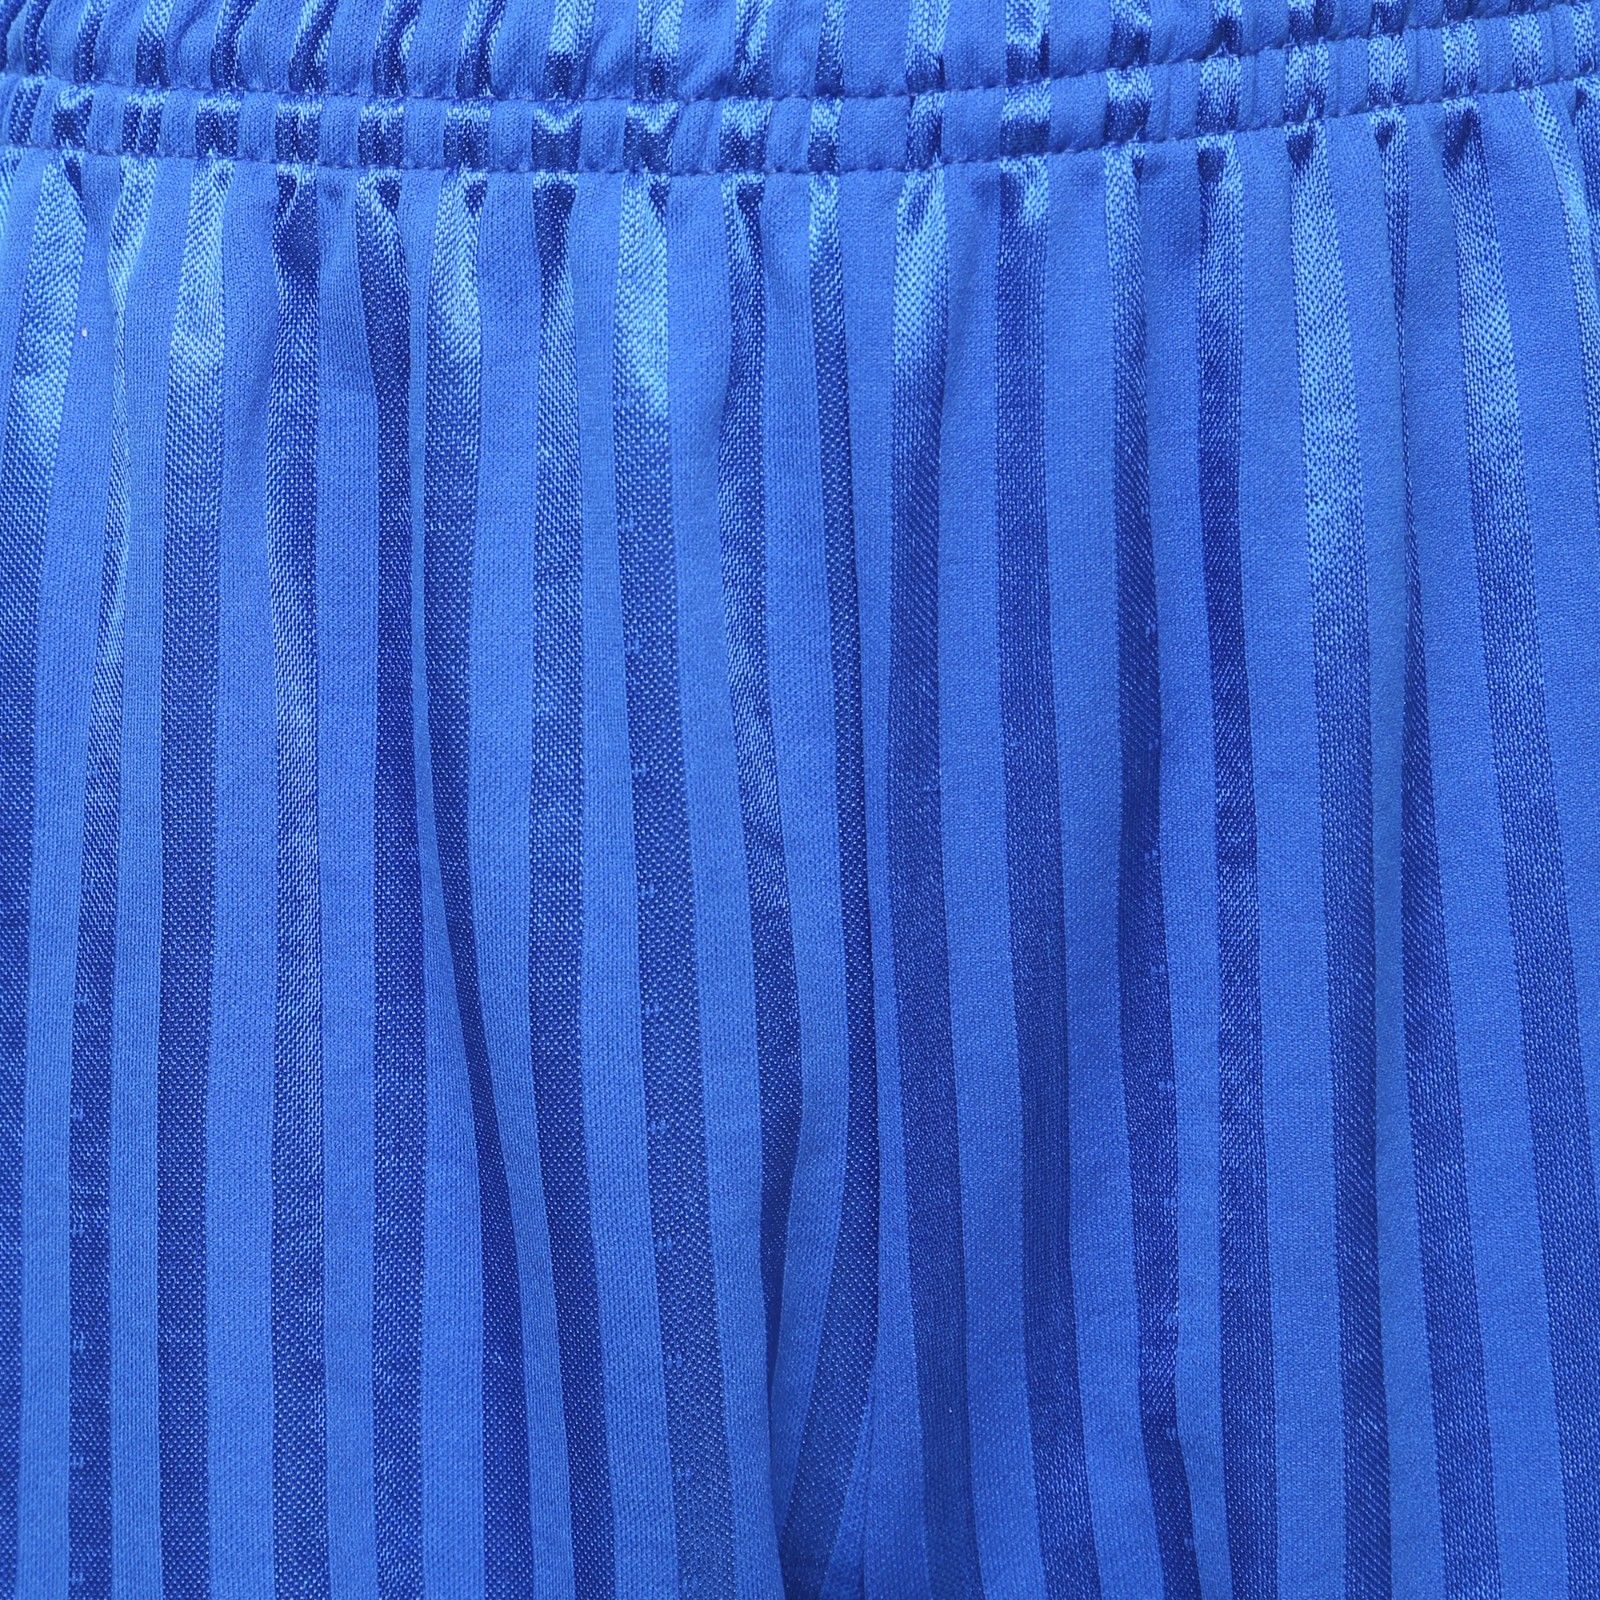 Unisex PE School Shadow Stripe Shorts Boys Girls Adult Football Gym Sports Short -Royal Blue